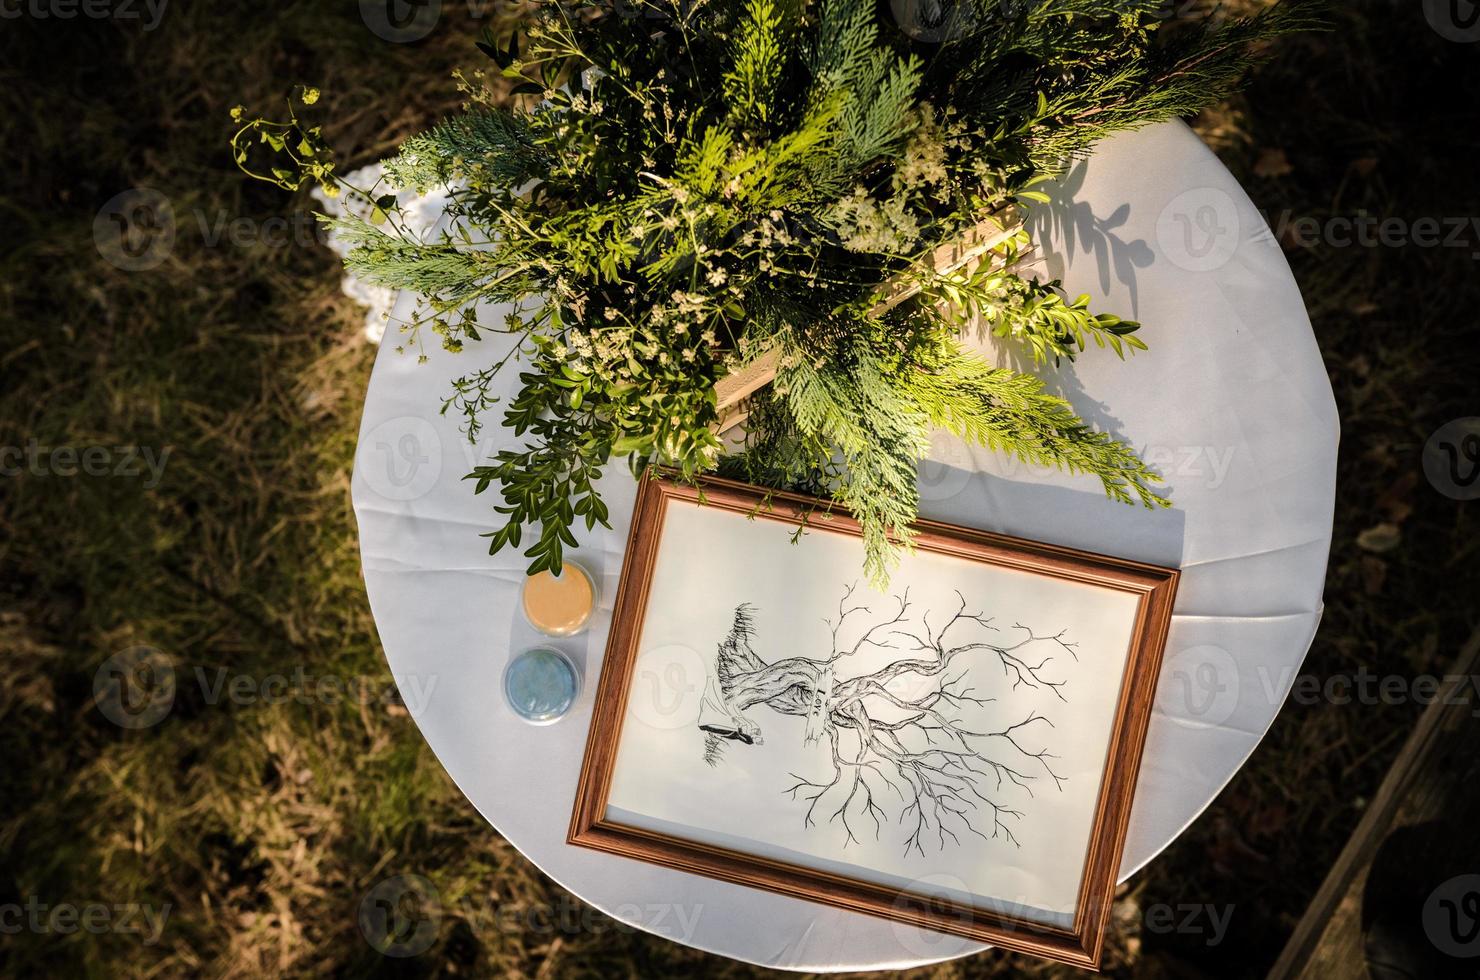 huwelijksceremonie in het bos foto